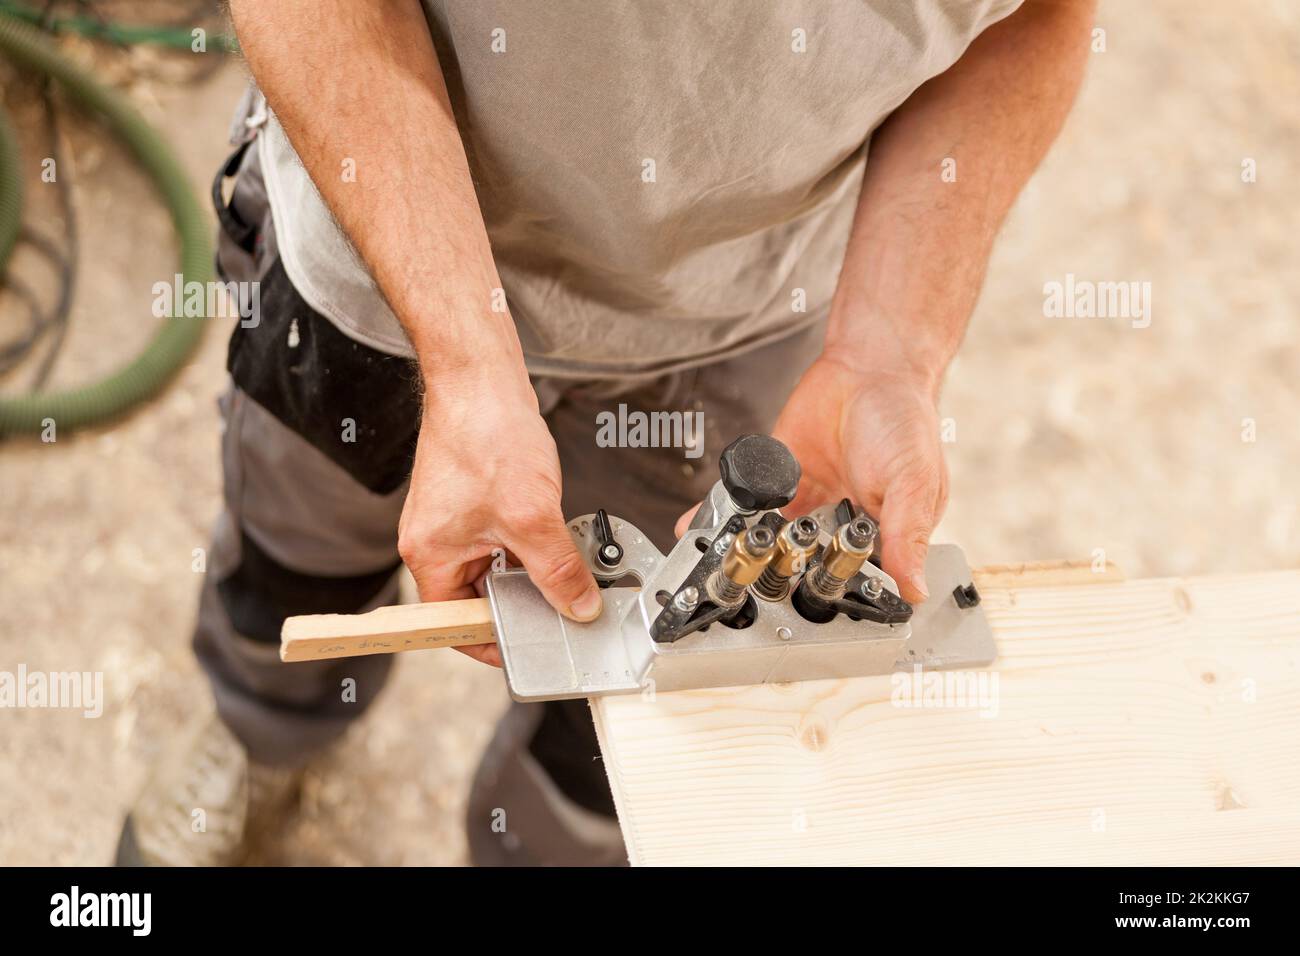 Holzarbeiter, der eine Lehre auf einem Holzbrett hält Stockfoto